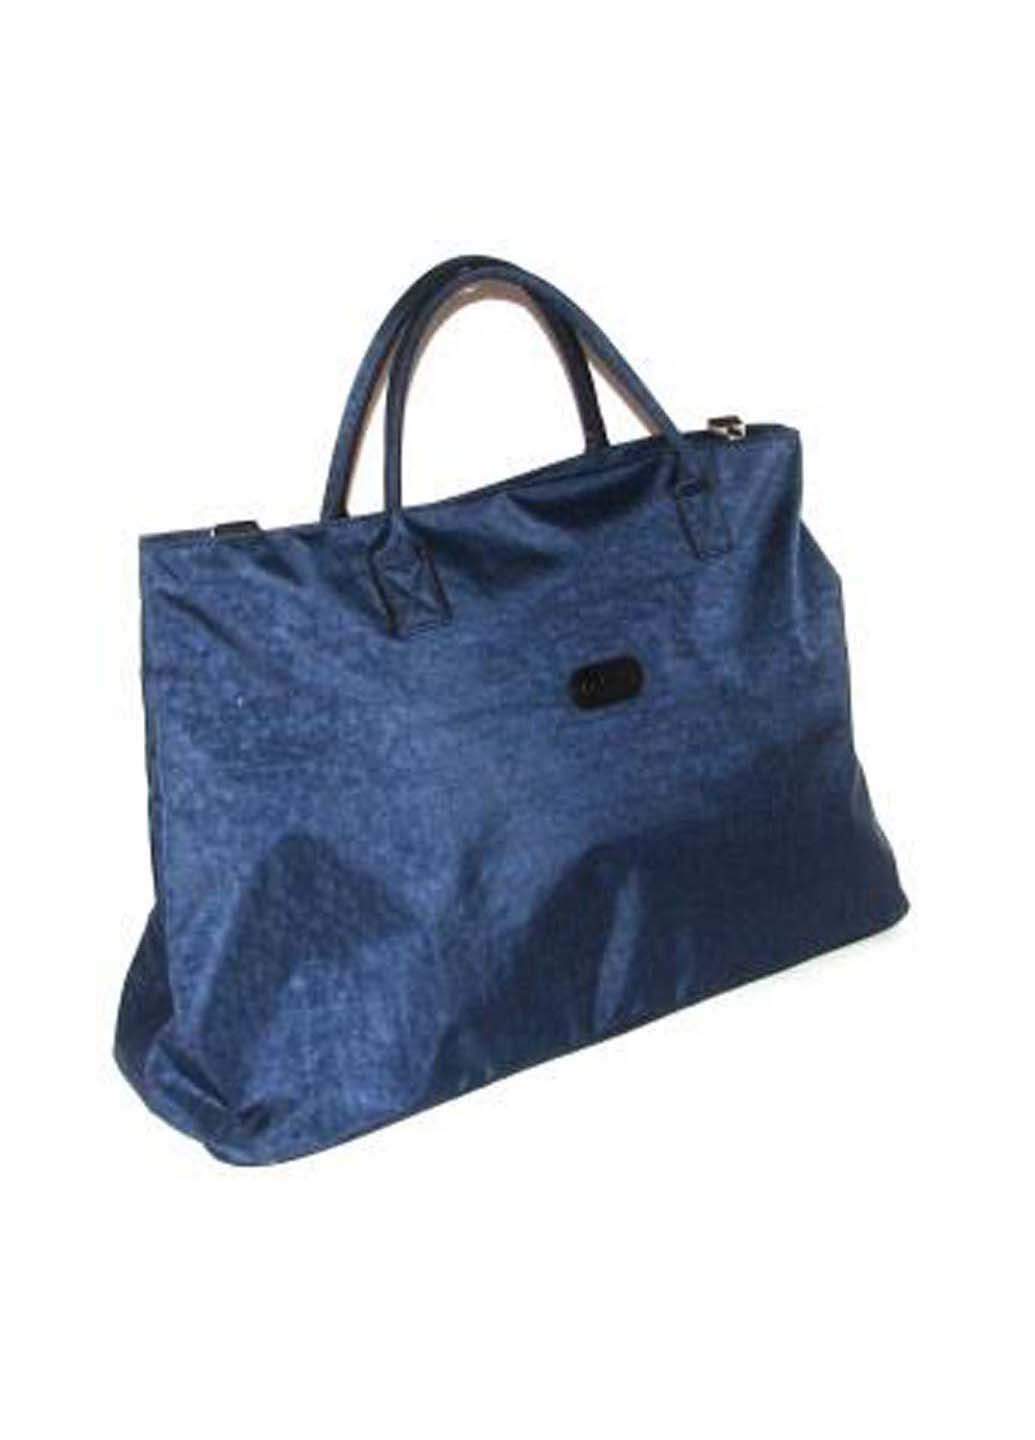 Дорожная сумка DNK Big bag синяя